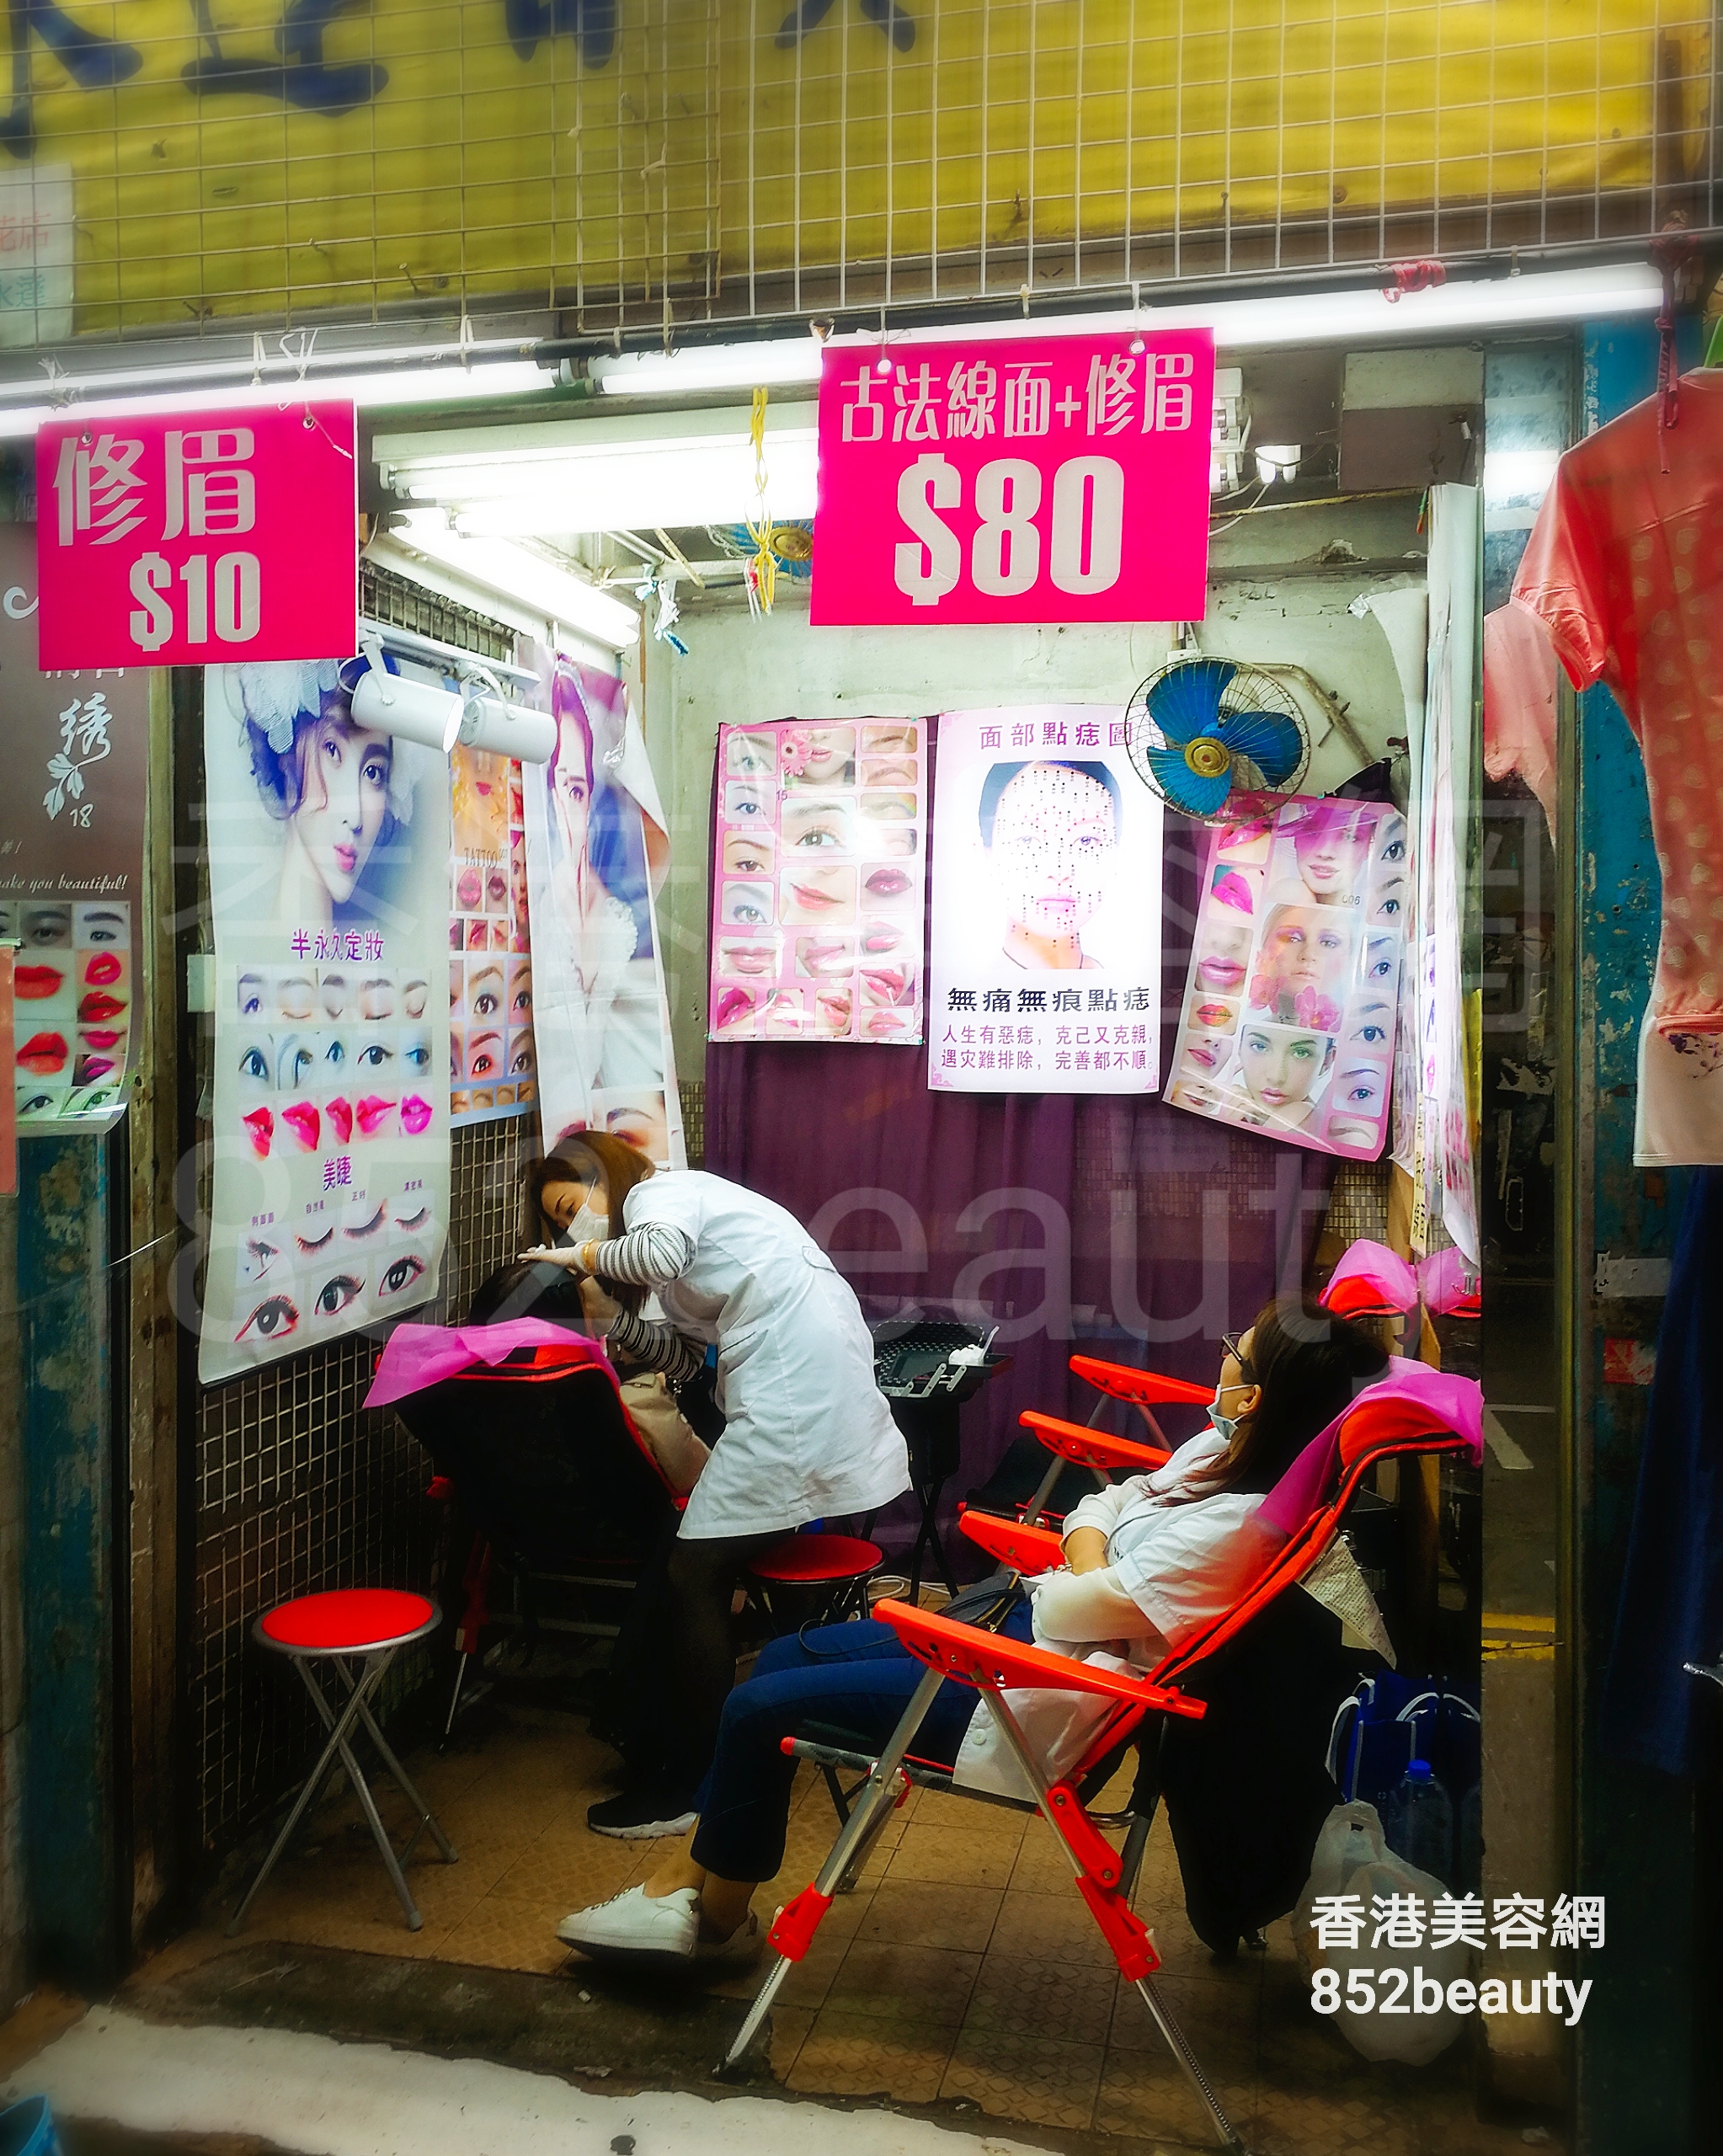 香港美容網 Hong Kong Beauty Salon 美容院 / 美容師: 湖北街花店